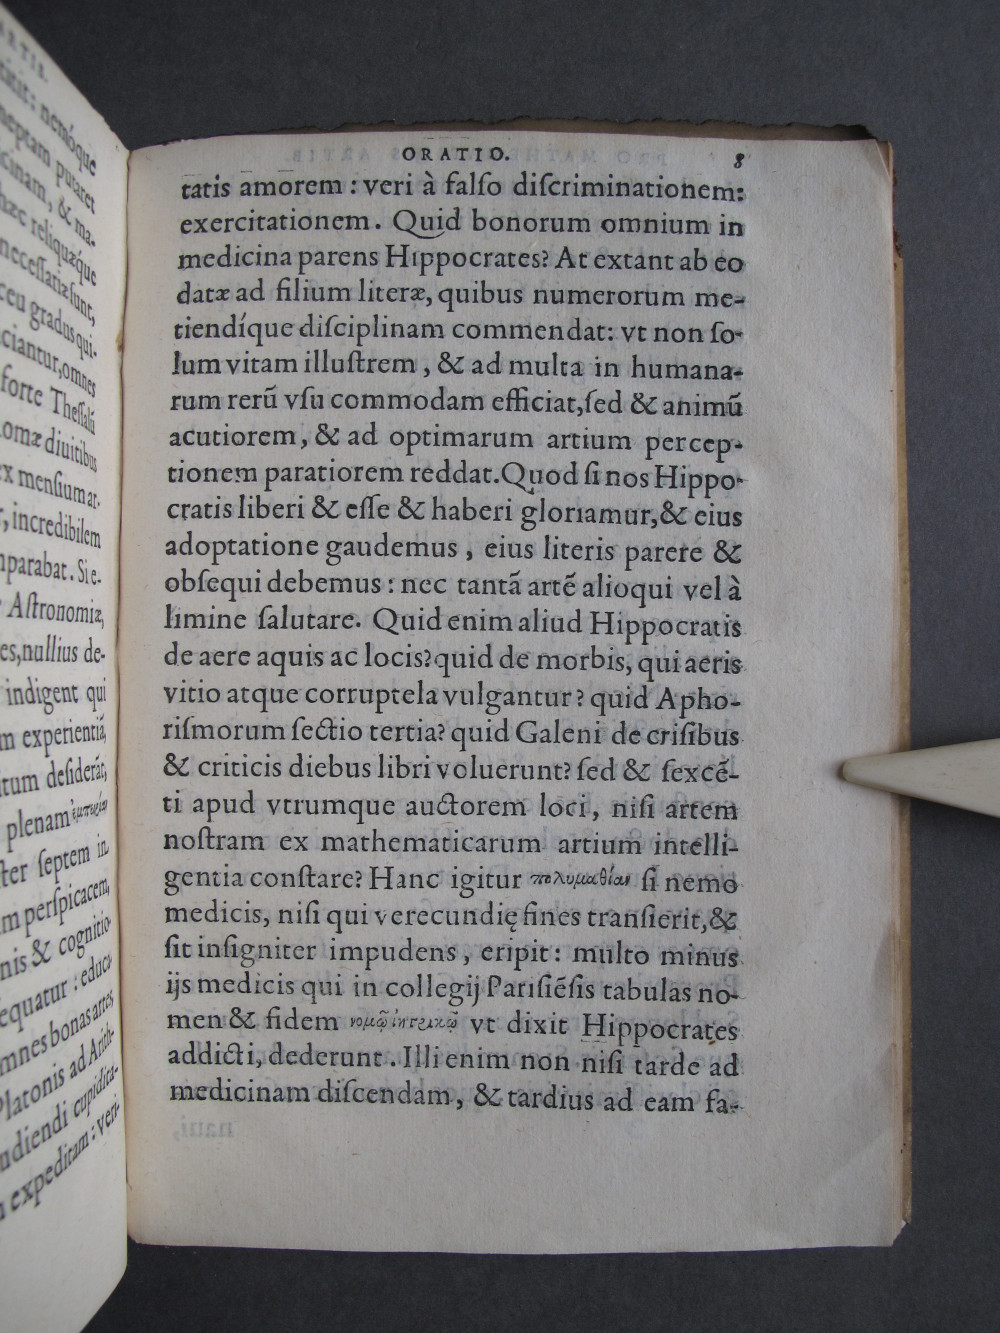 Folio 8 recto